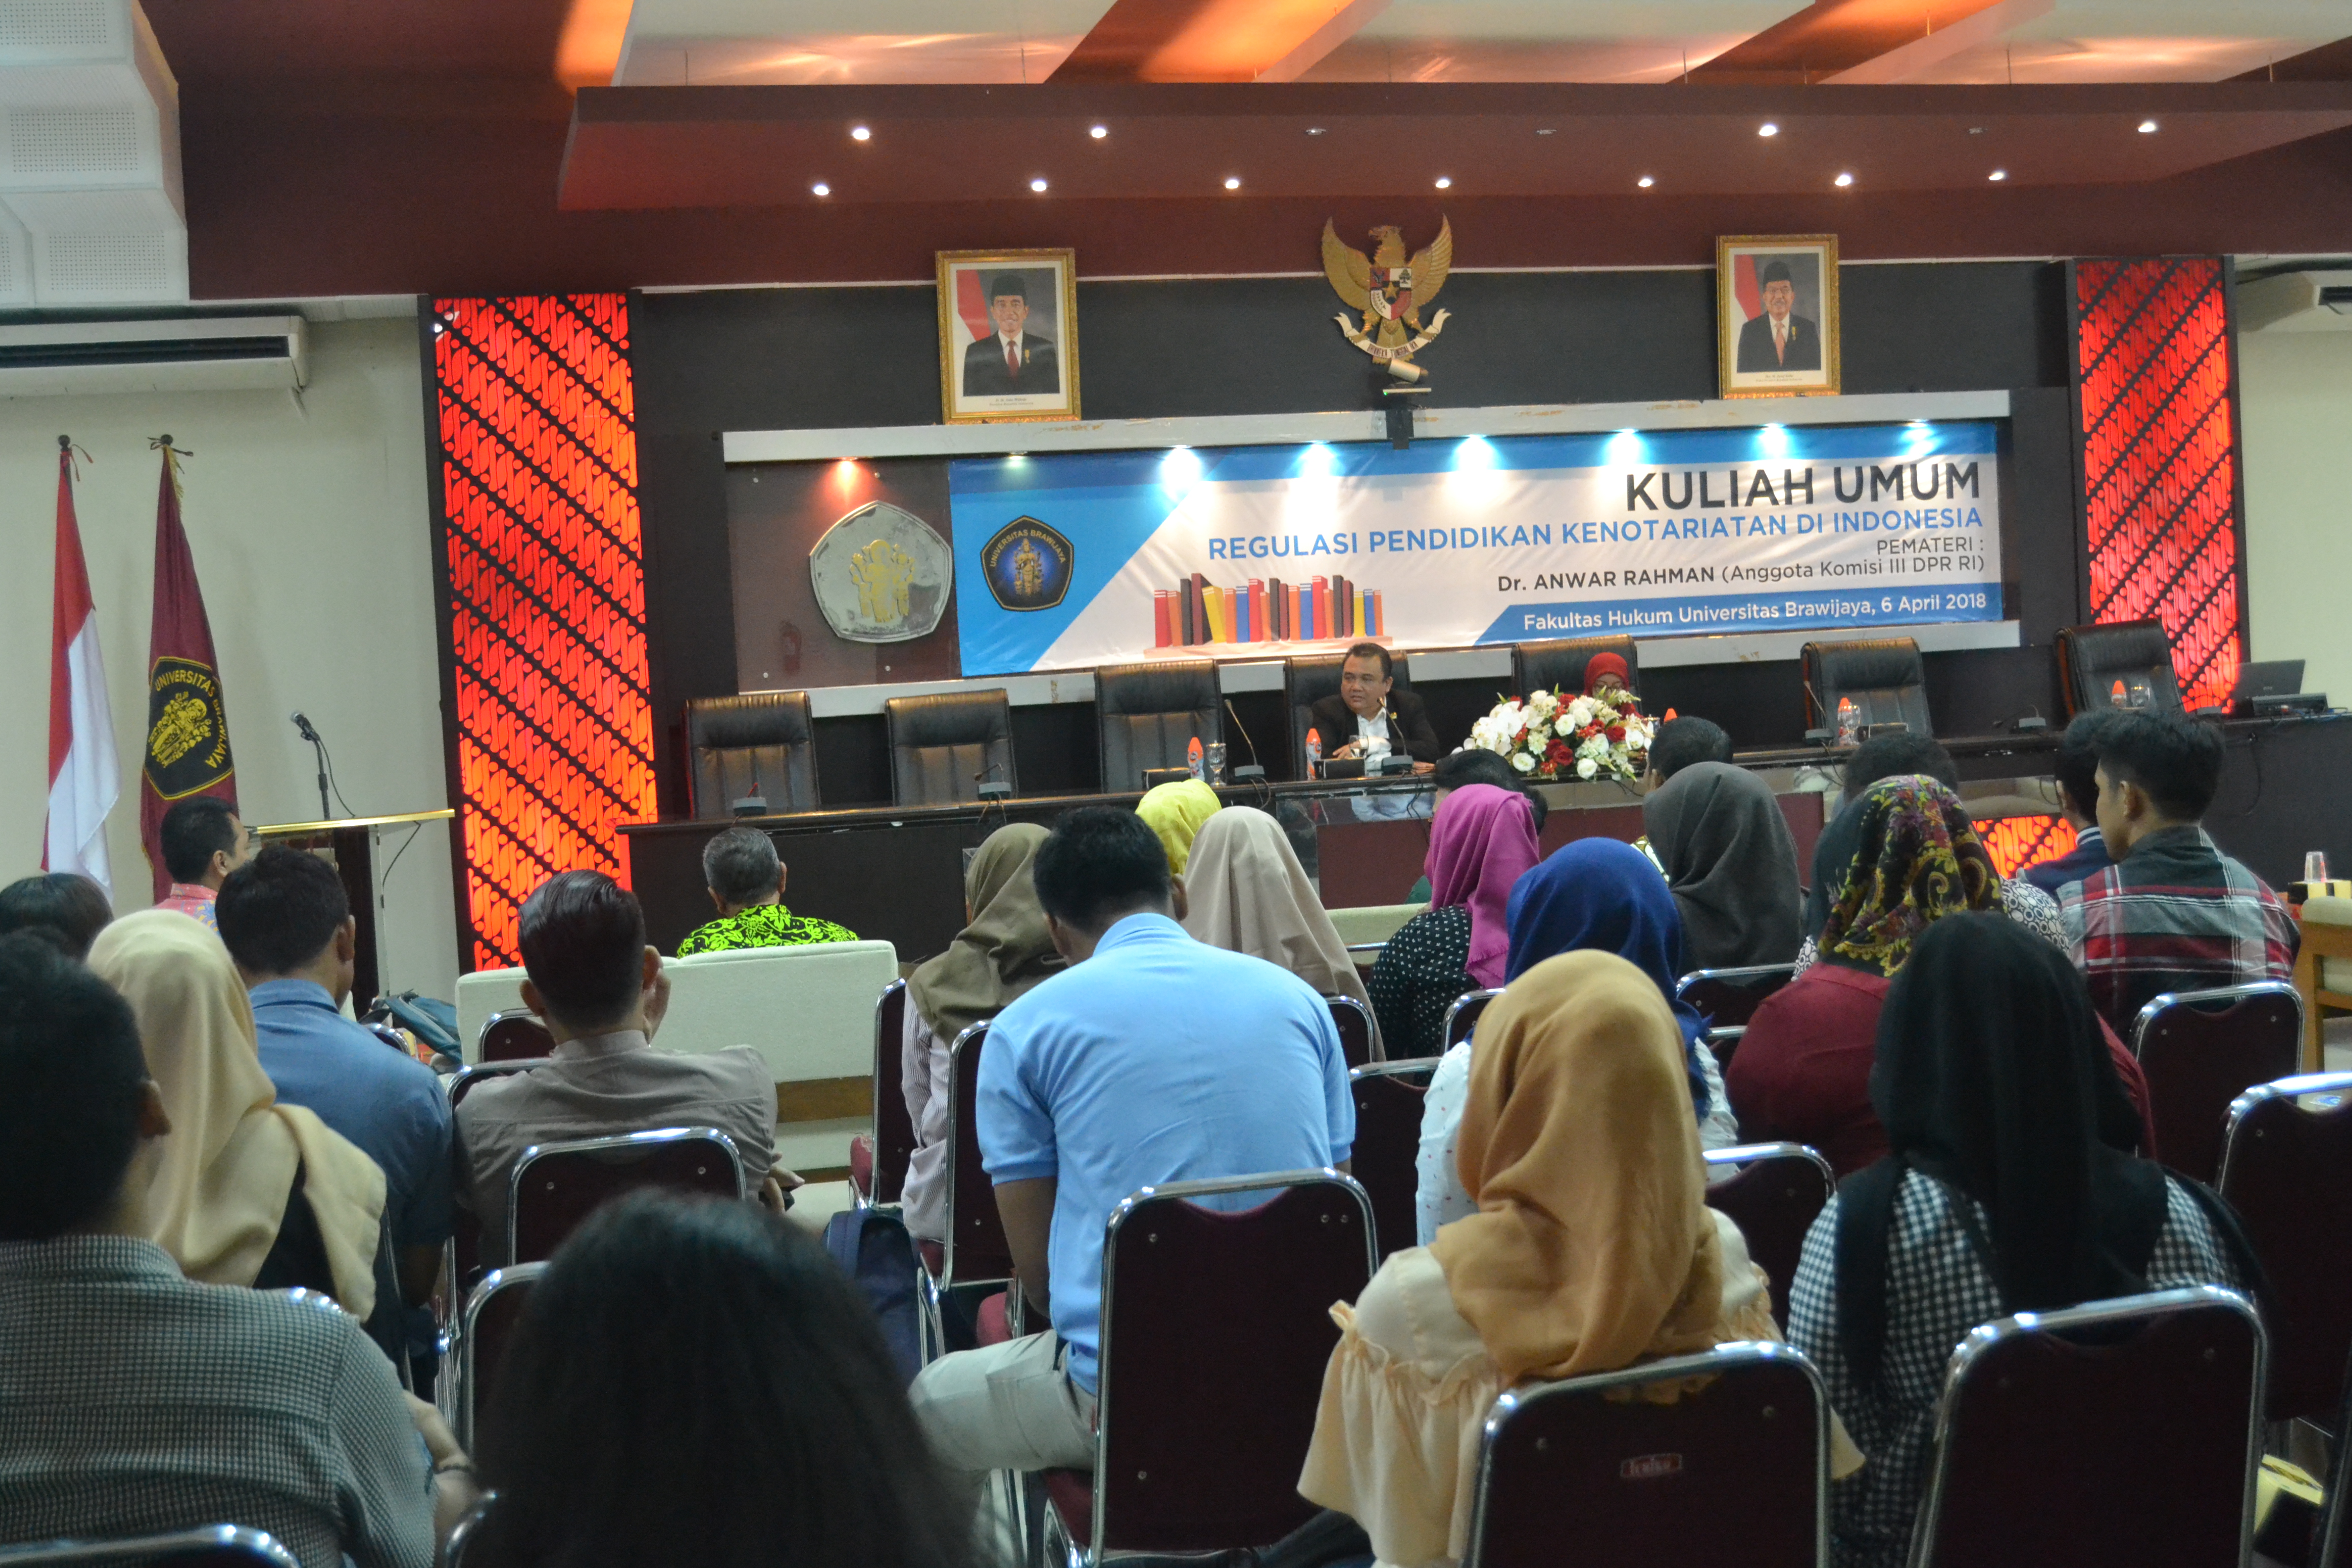 You are currently viewing Kuliah Tamu Regulasi Pendidikan Kenotariatan di Indonesia